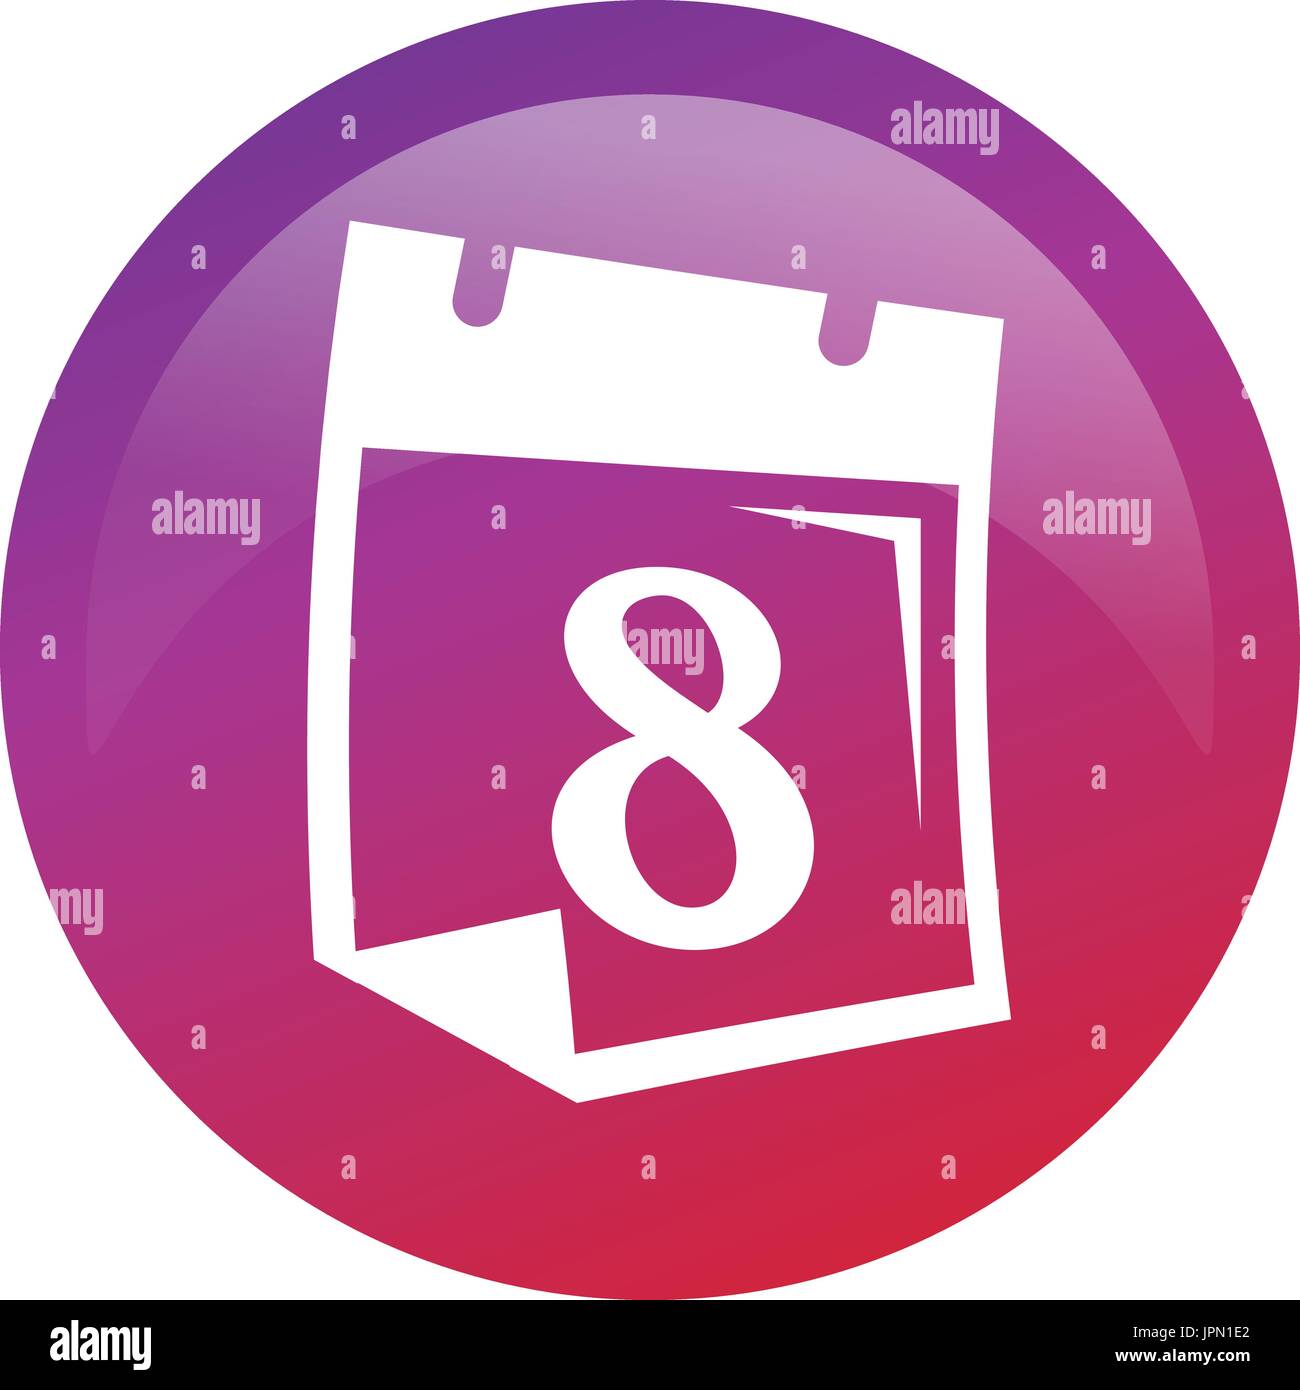 Nummer 8 auf Kalender innerhalb eines Kreises, Icon-Design, isoliert auf weißem Hintergrund. Stock Vektor